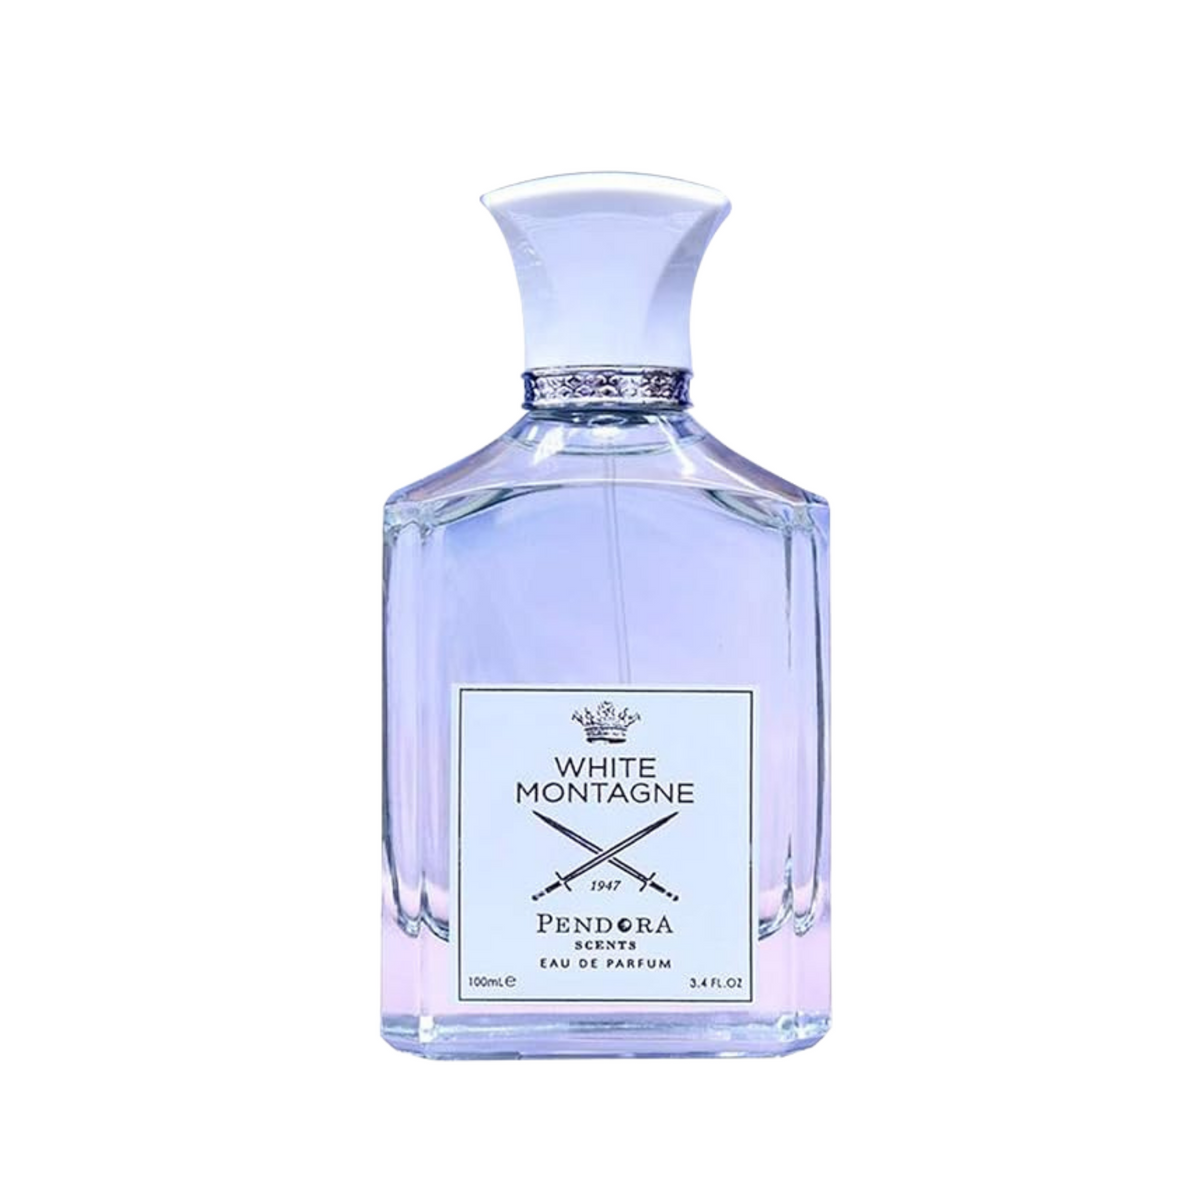 White Montagne Unisex Eau de Parfum by Pendora Scents - 100ml